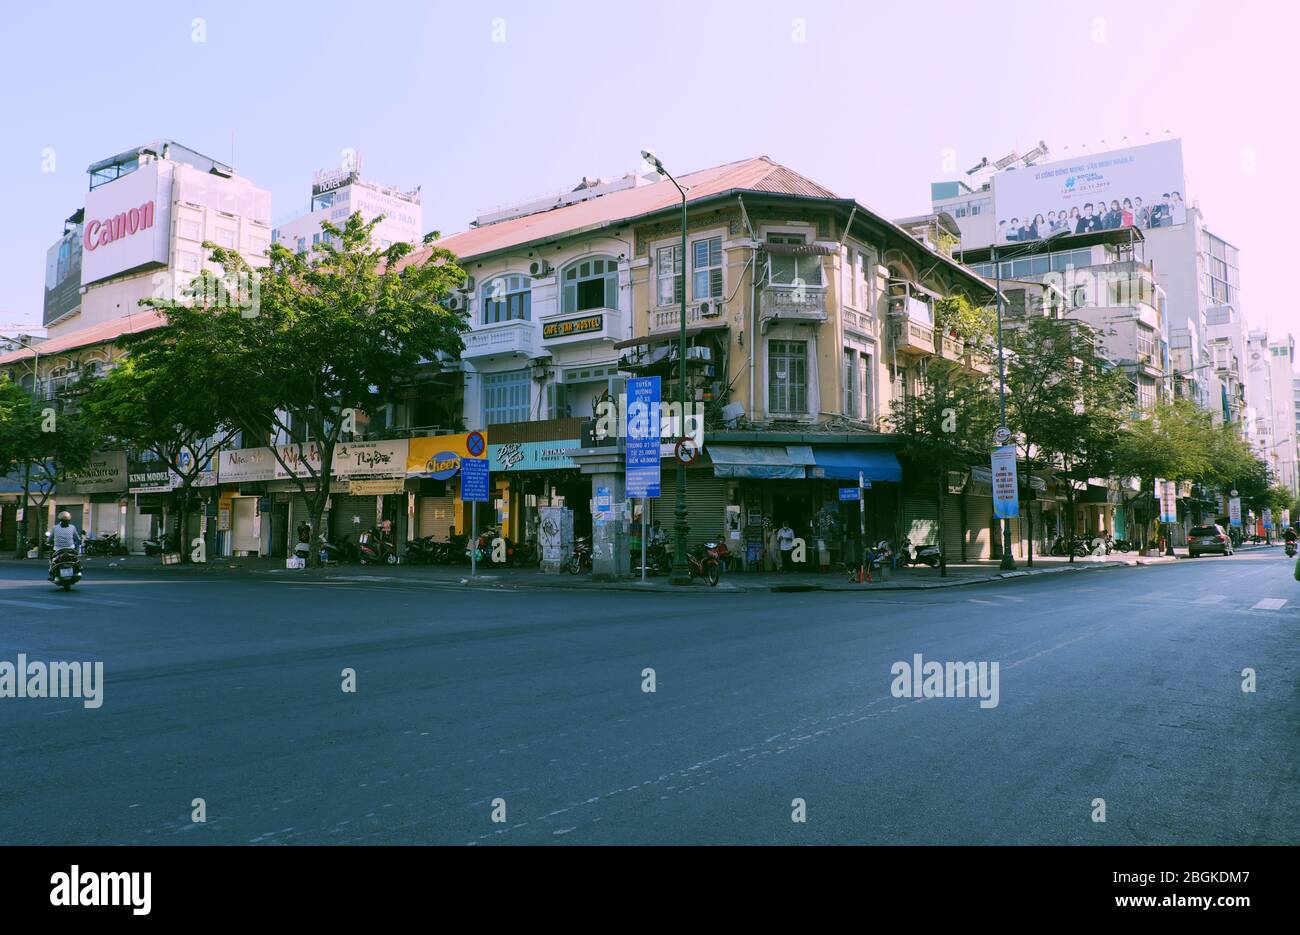 HO CHI MINH STADT, VIET NAM, einsame Straße, ruhige Szene im zentralen Bereich der Großstadt auf Anfrage Limit bewegen sich in Pandemie, nur wenige Fahrzeug bewegen Stockfoto